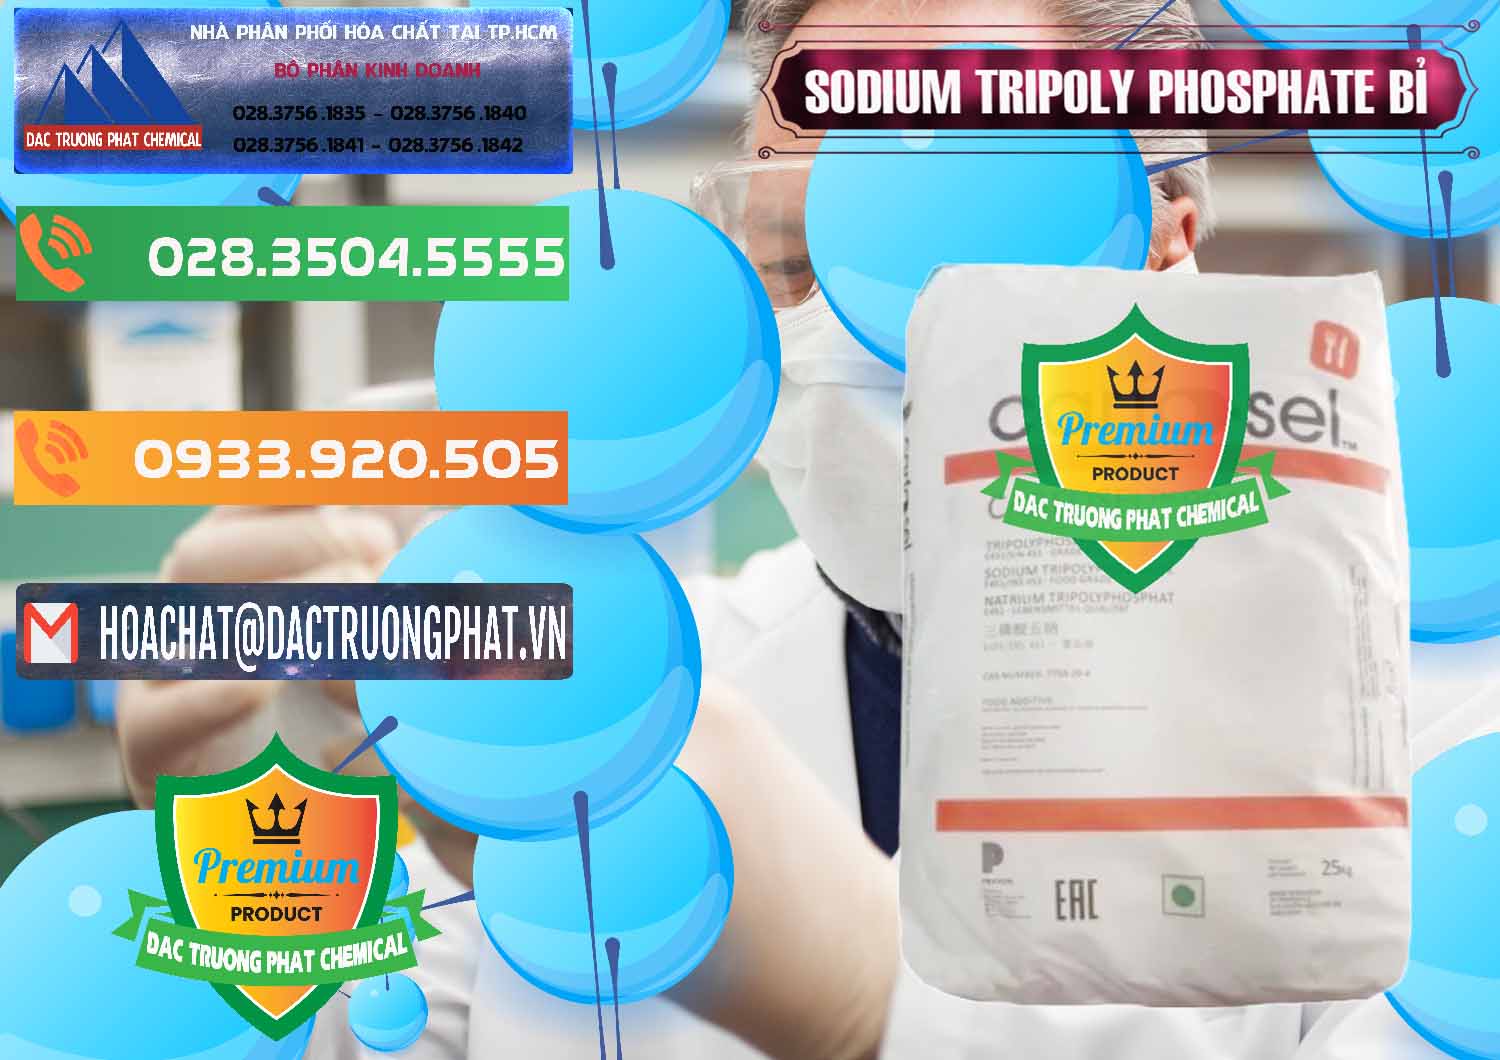 Cty bán & phân phối Sodium Tripoly Phosphate - STPP Carfosel 991 Bỉ Belgium - 0429 - Đơn vị chuyên cung ứng & phân phối hóa chất tại TP.HCM - hoachatxulynuoc.com.vn